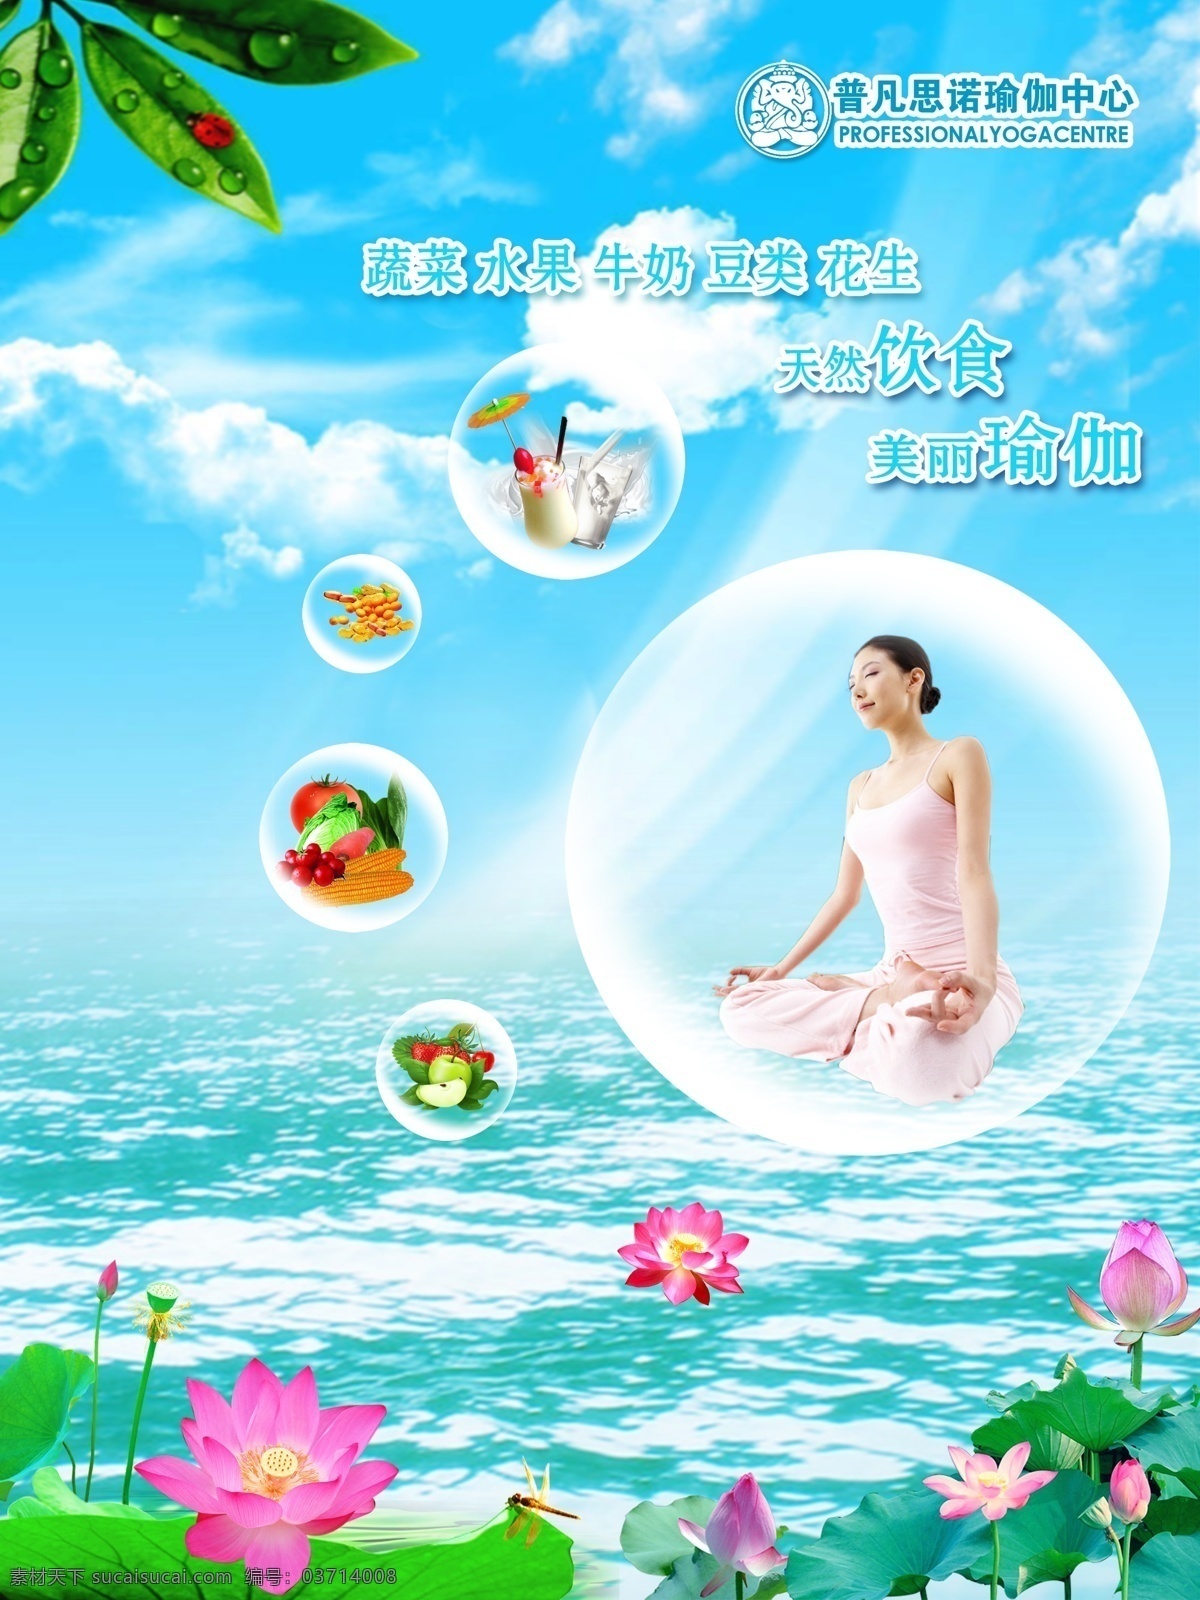 瑜珈海报 瑜珈 美食 蔬菜 水果 气泡 水面 荷花 广告设计模板 源文件